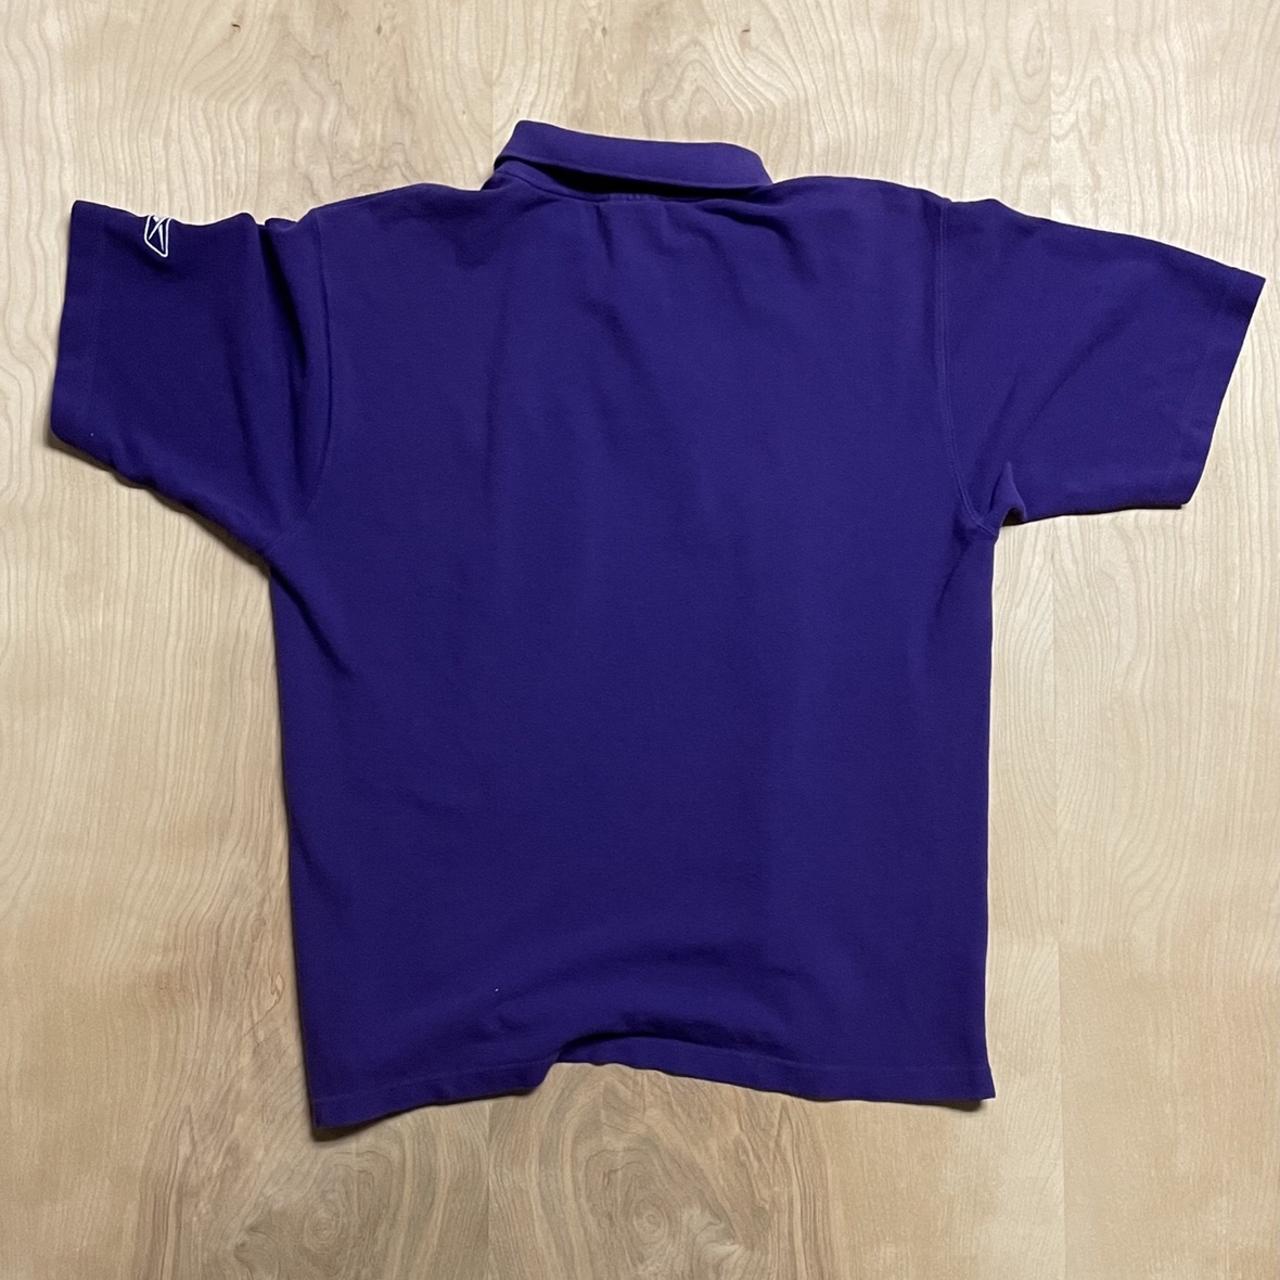 Reebok Men's Purple Polo-shirts (2)